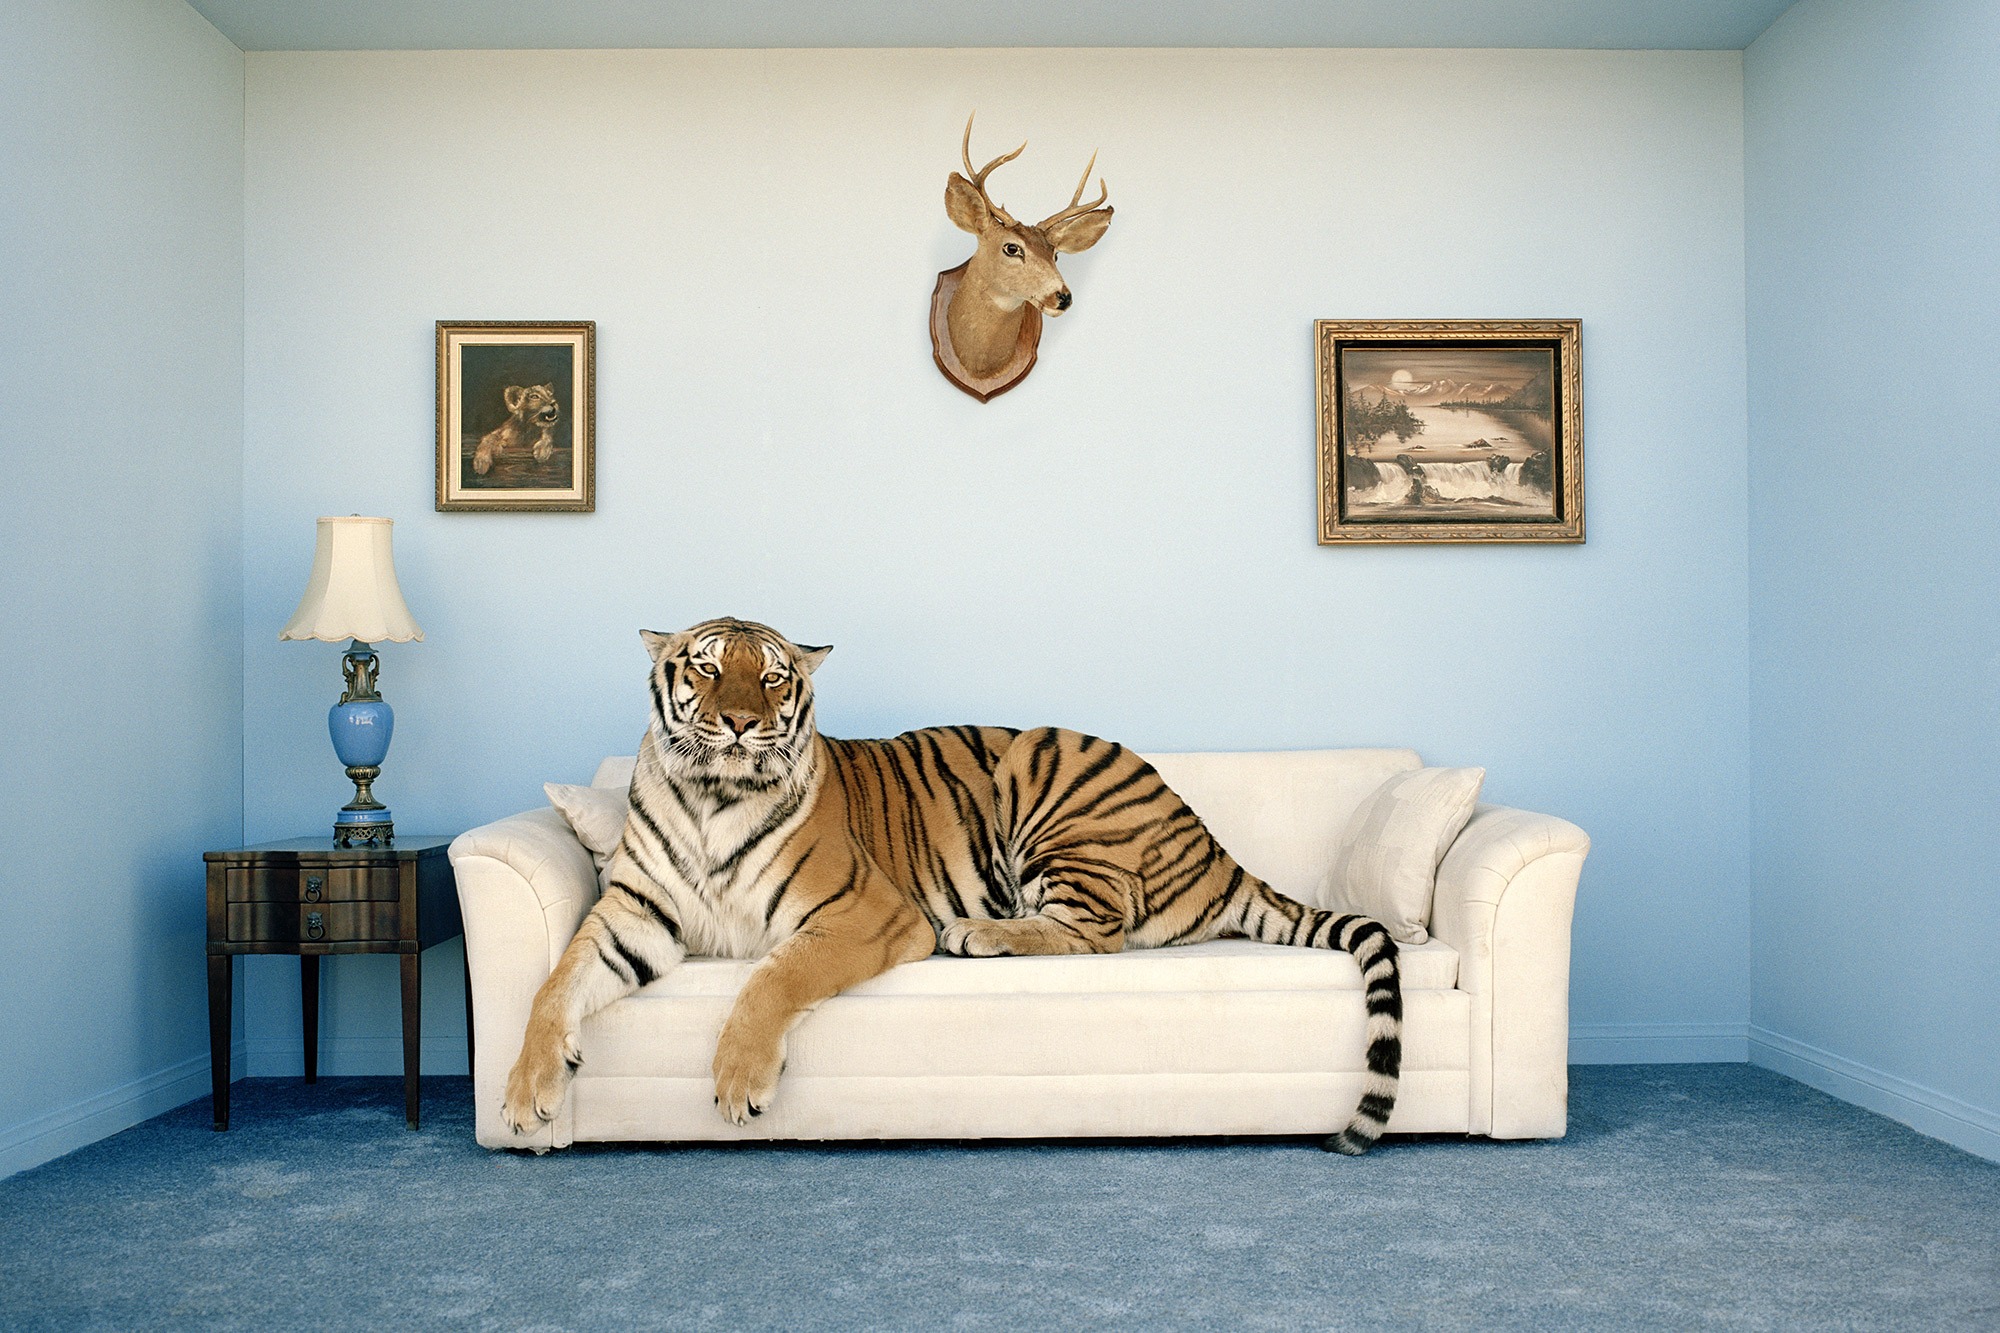 Una tigre in salotto